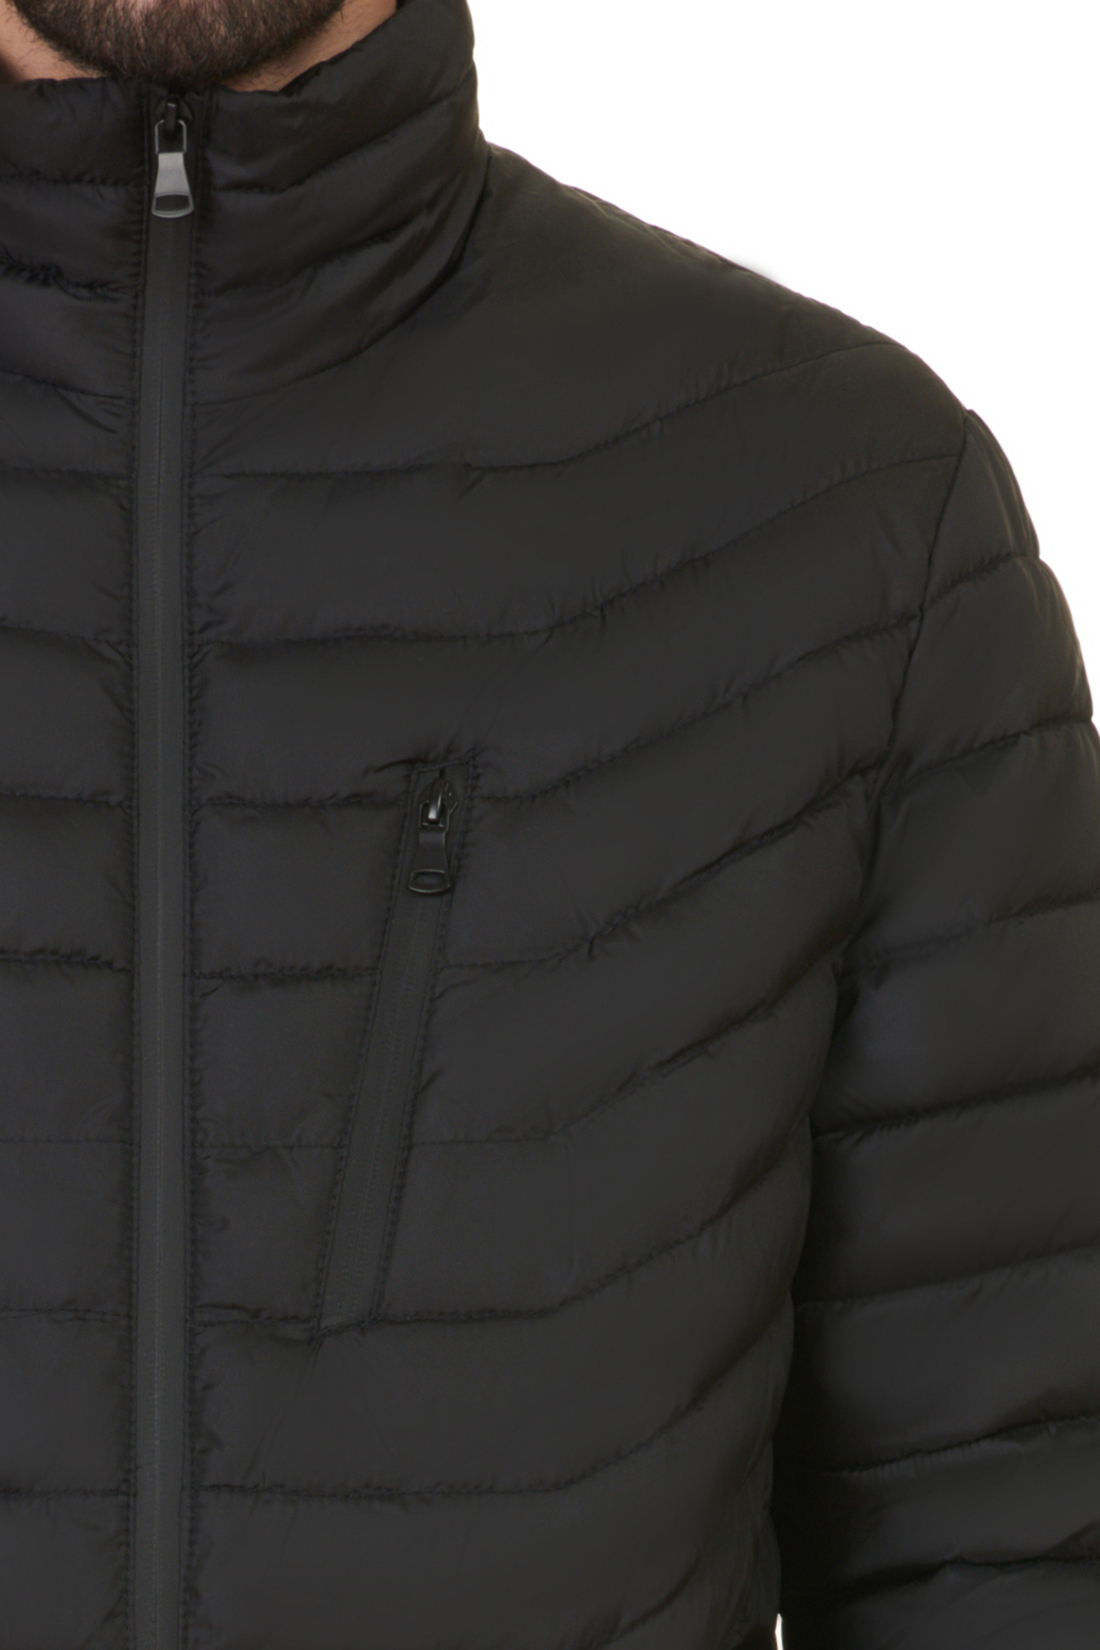 Куртка с непроницаемыми молниями (арт. baon B537547), размер L, цвет черный Куртка с непроницаемыми молниями (арт. baon B537547) - фото 4